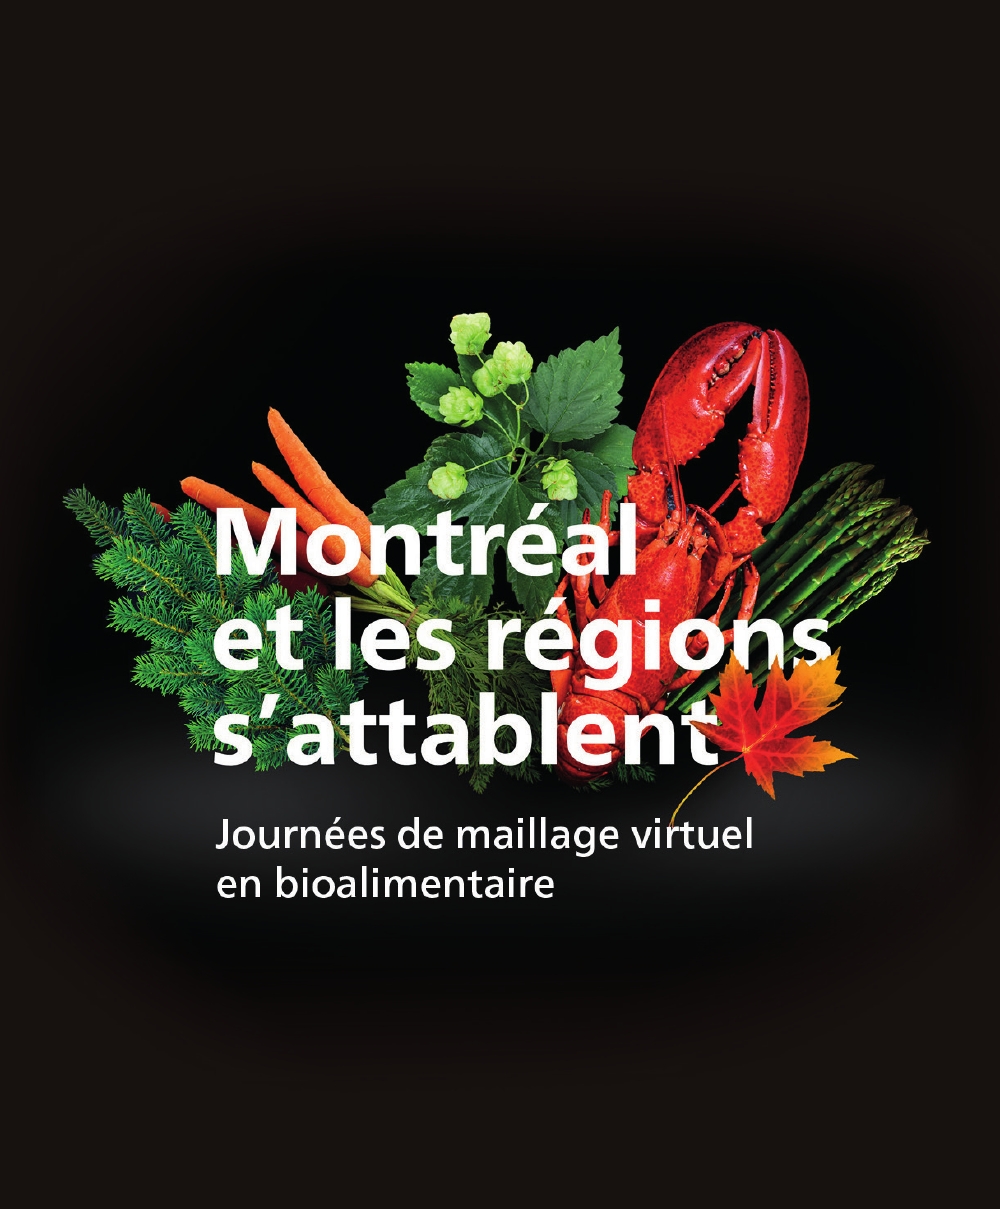 Clé d'identification des PAEE - Conseil régional de l'environnement des  Laurentides